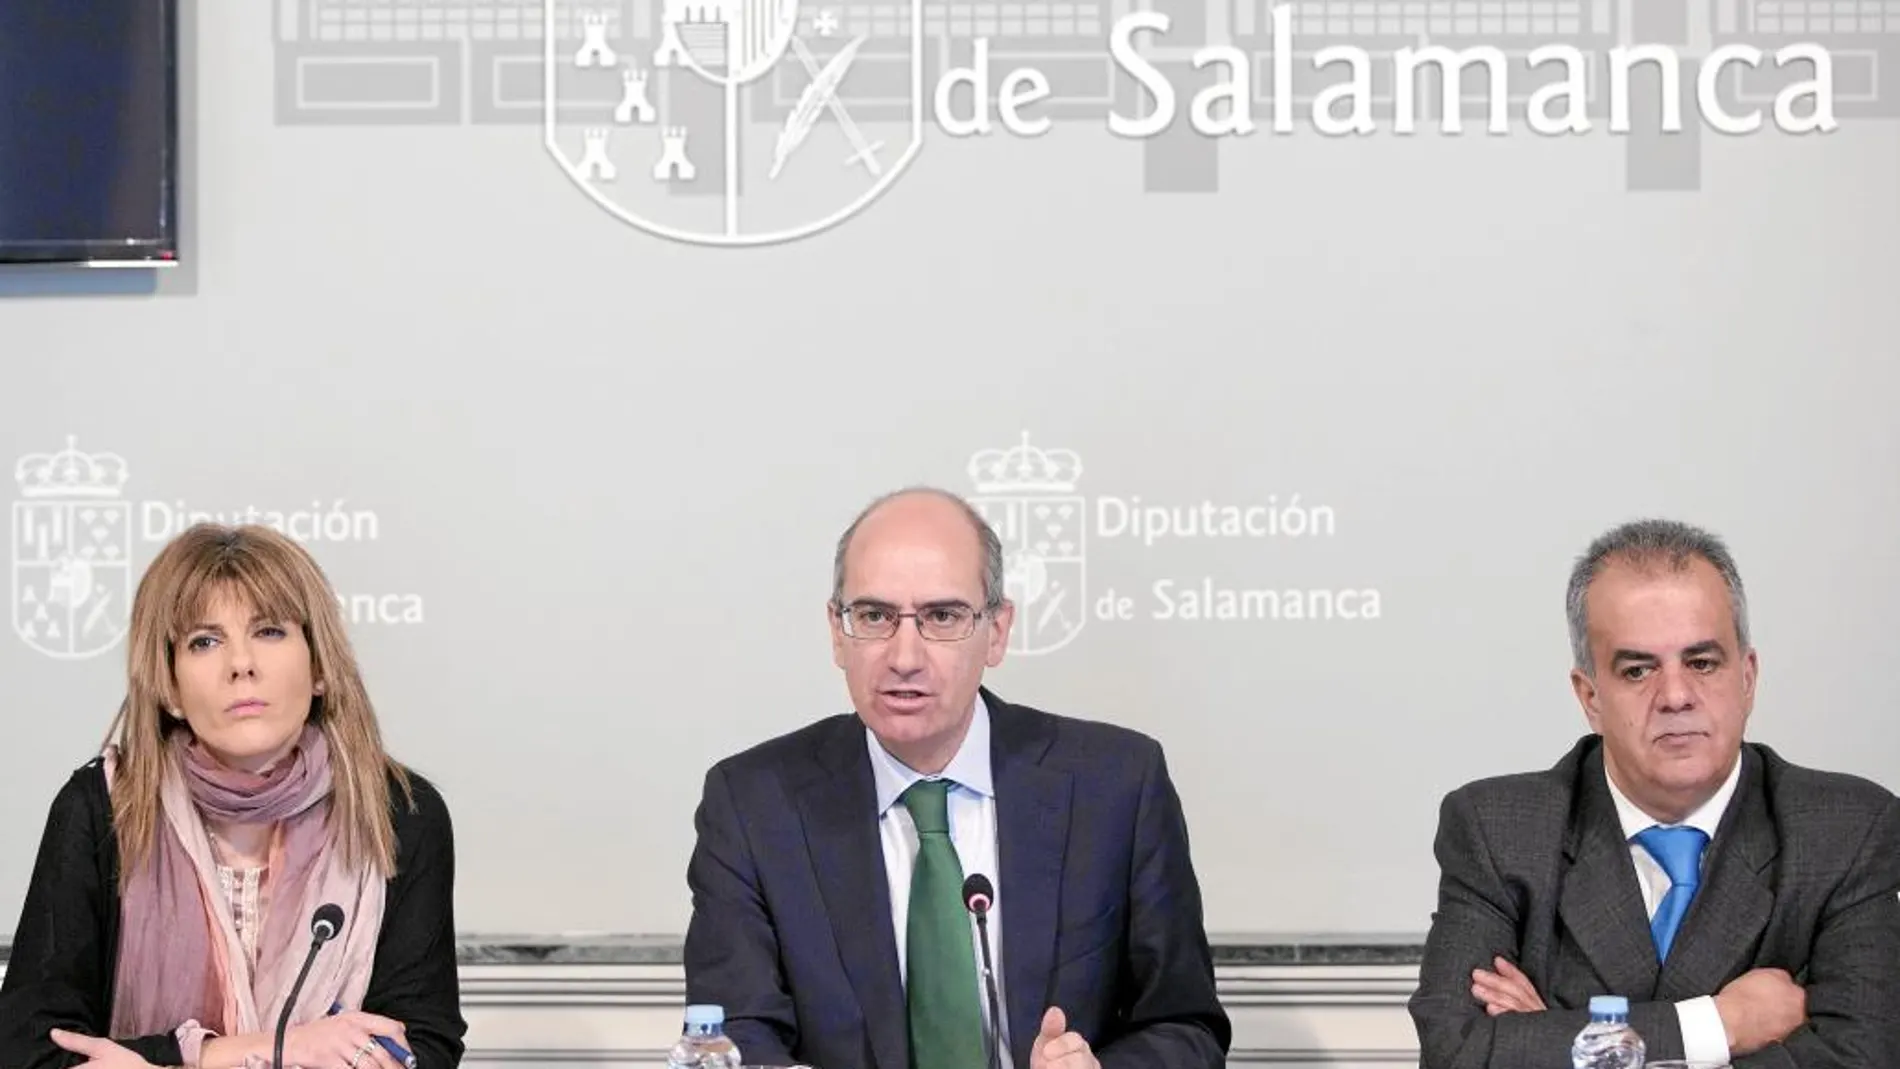 El presidente de la Diputación de Salamanca, Javier Iglesias, junto a los diputados Eva Picado y José María Sánchez